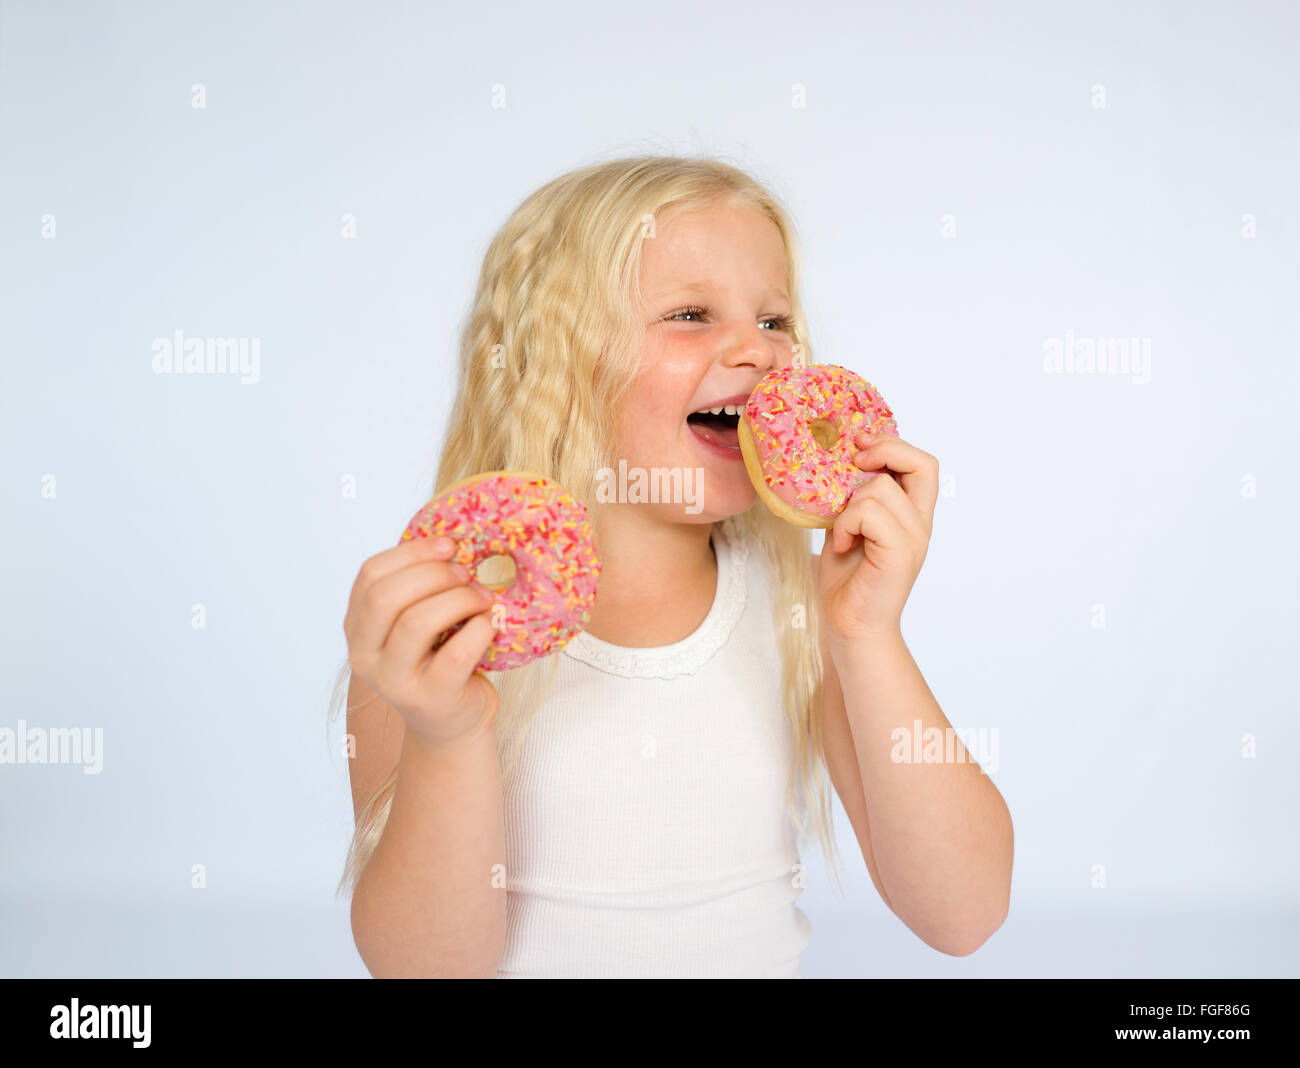 Jeune fille avec de longs cheveux blonds tenant deux beignes glacés rose, rire Banque D'Images